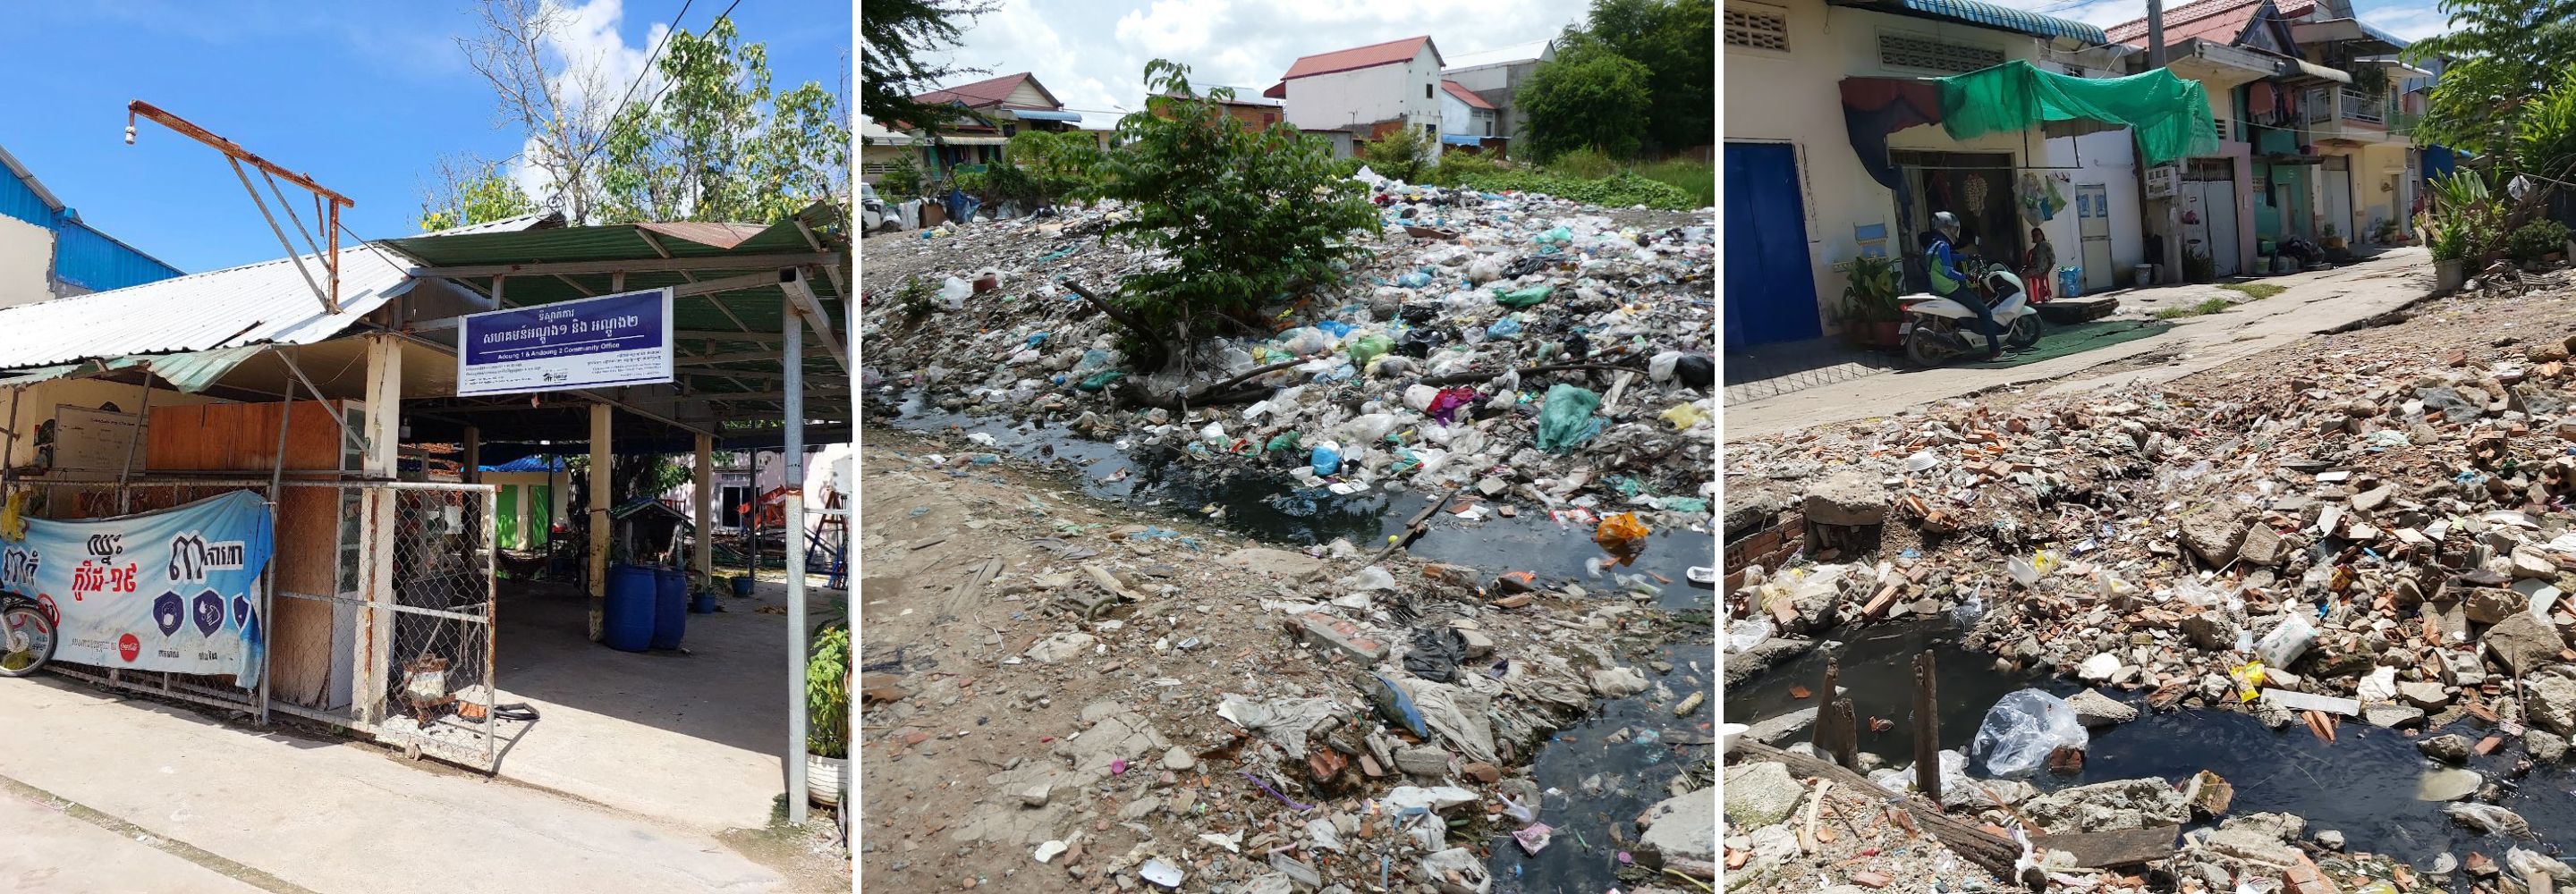 Maison communautaire, eaux usées et route dégradée au Cambodge